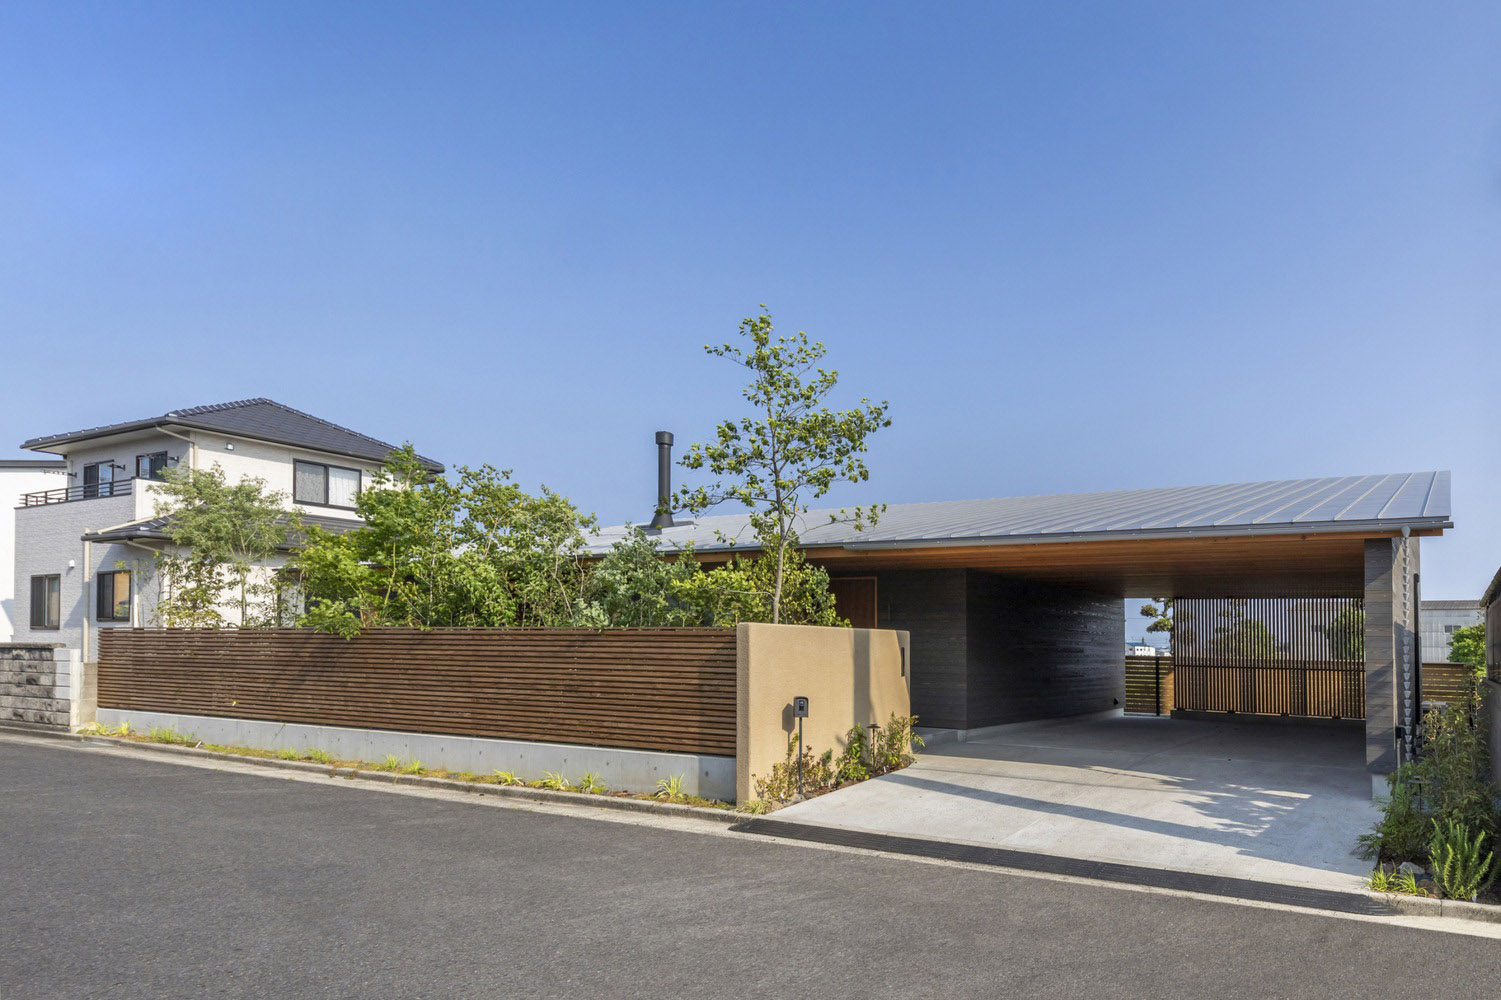 西下太一建筑师事务所,住宅设计,住宅设计案例,极简主义,日式风格,退休住宅,日本,Taichi Nishishita architect & associate